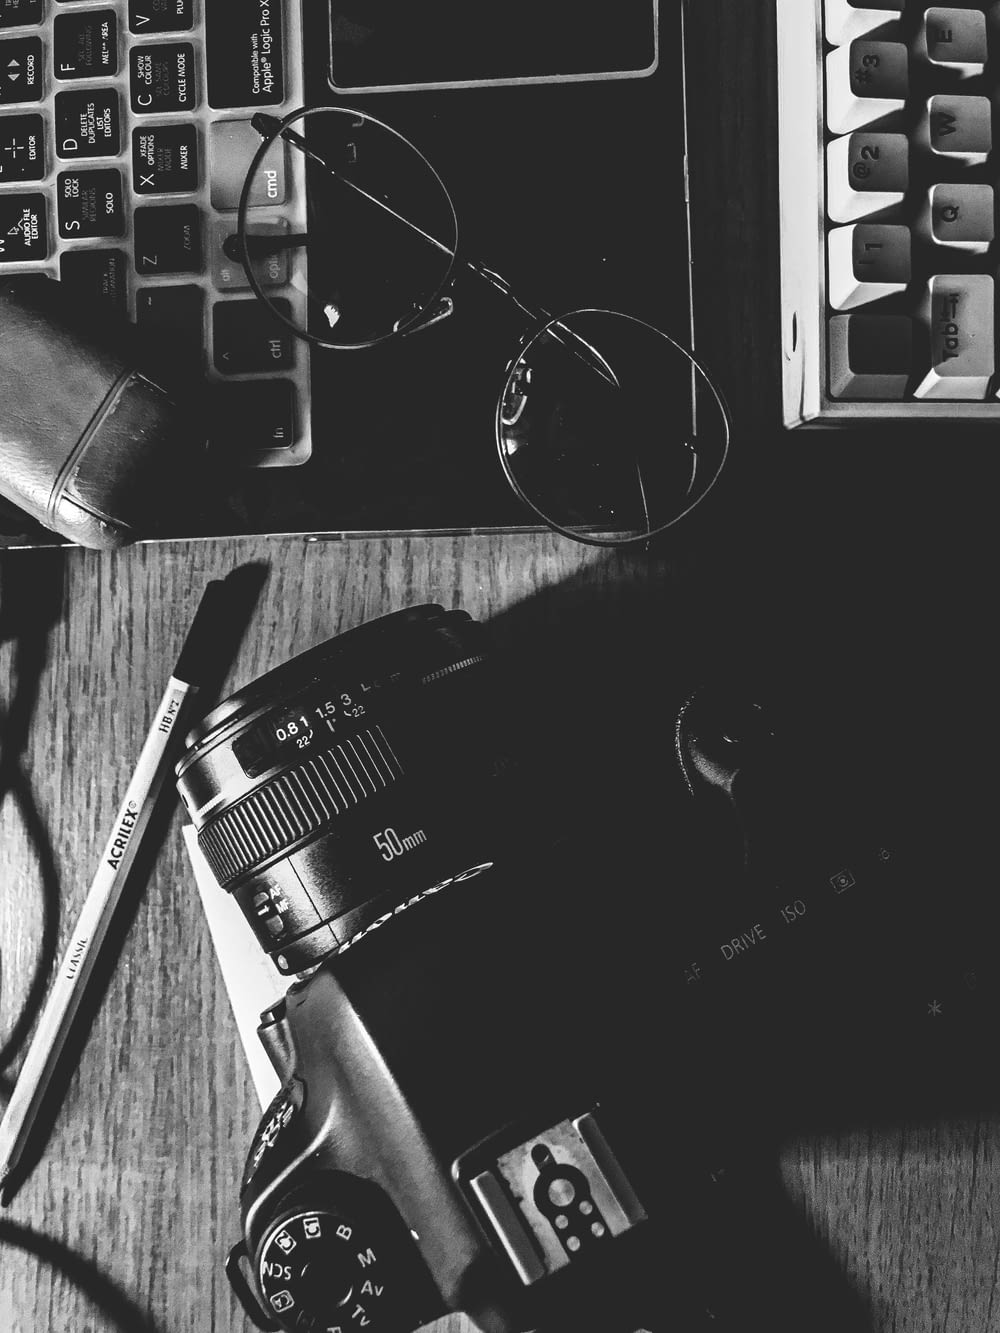 Appareil photo reflex numérique Nikon noir à côté du clavier d’ordinateur noir et argenté